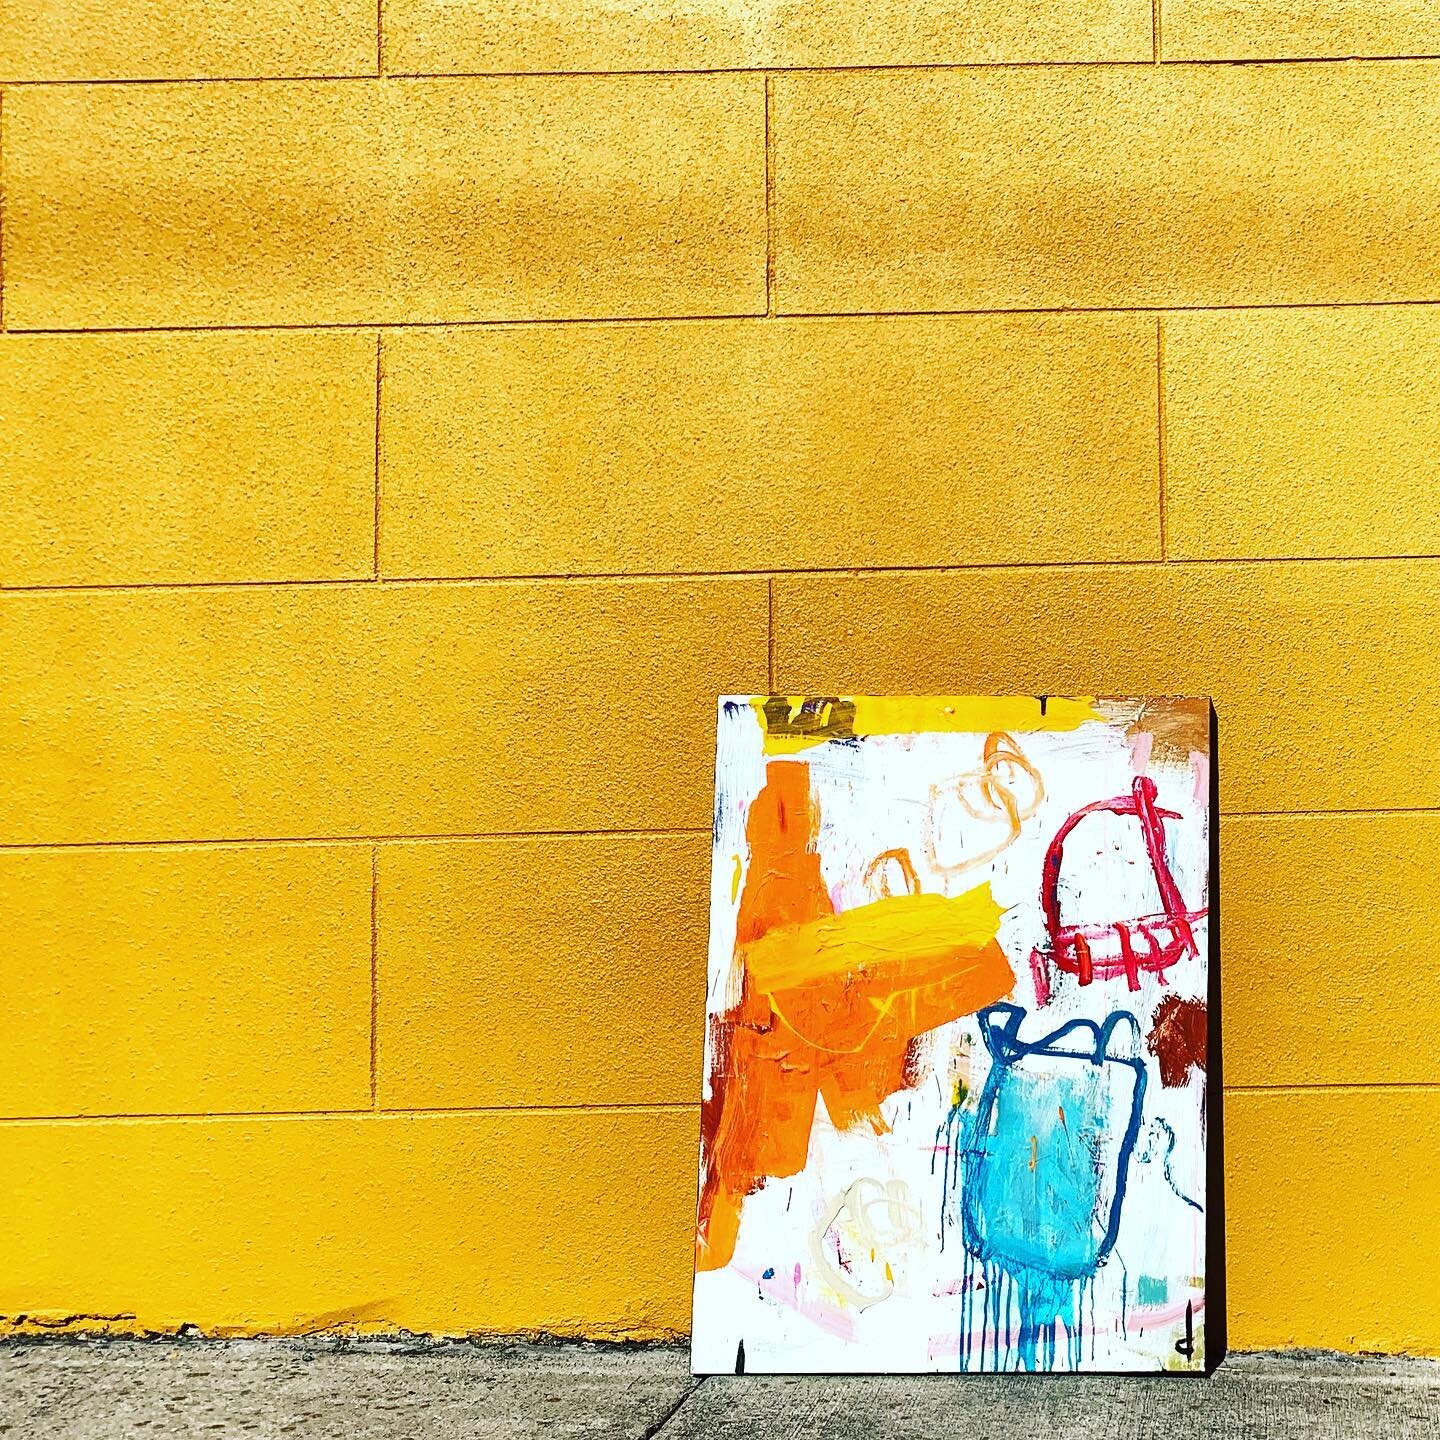 slinging paint in Savannah 

#streetart #urbanart #contemporaryart #contemporarypainting #modernart #fineart #popart #abstractart #abstractartist #abstractpainting #artwork #artistsoninstagram #artgallery #artstudio #artcurator #savannahart #artforsa